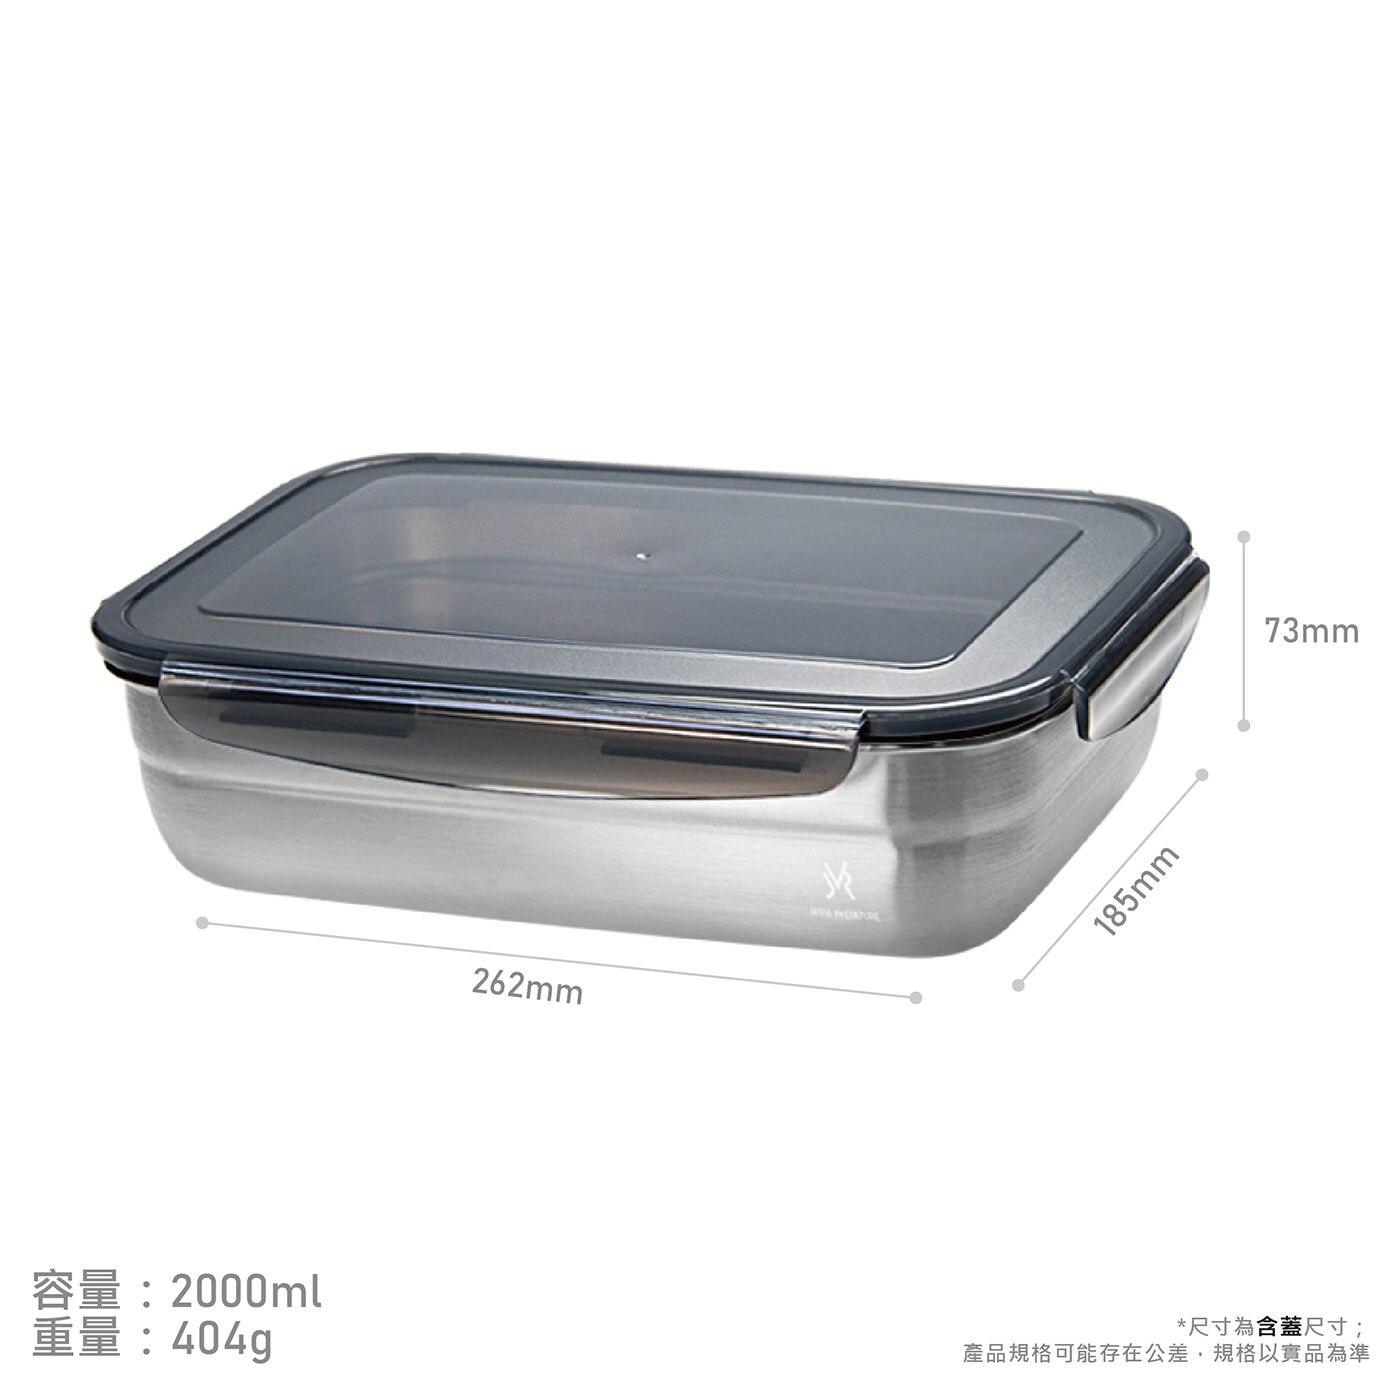 JVR方型不鏽鋼保鮮盒容量2000ml、重量404g，尺寸為含蓋尺寸，規格以實品為準。